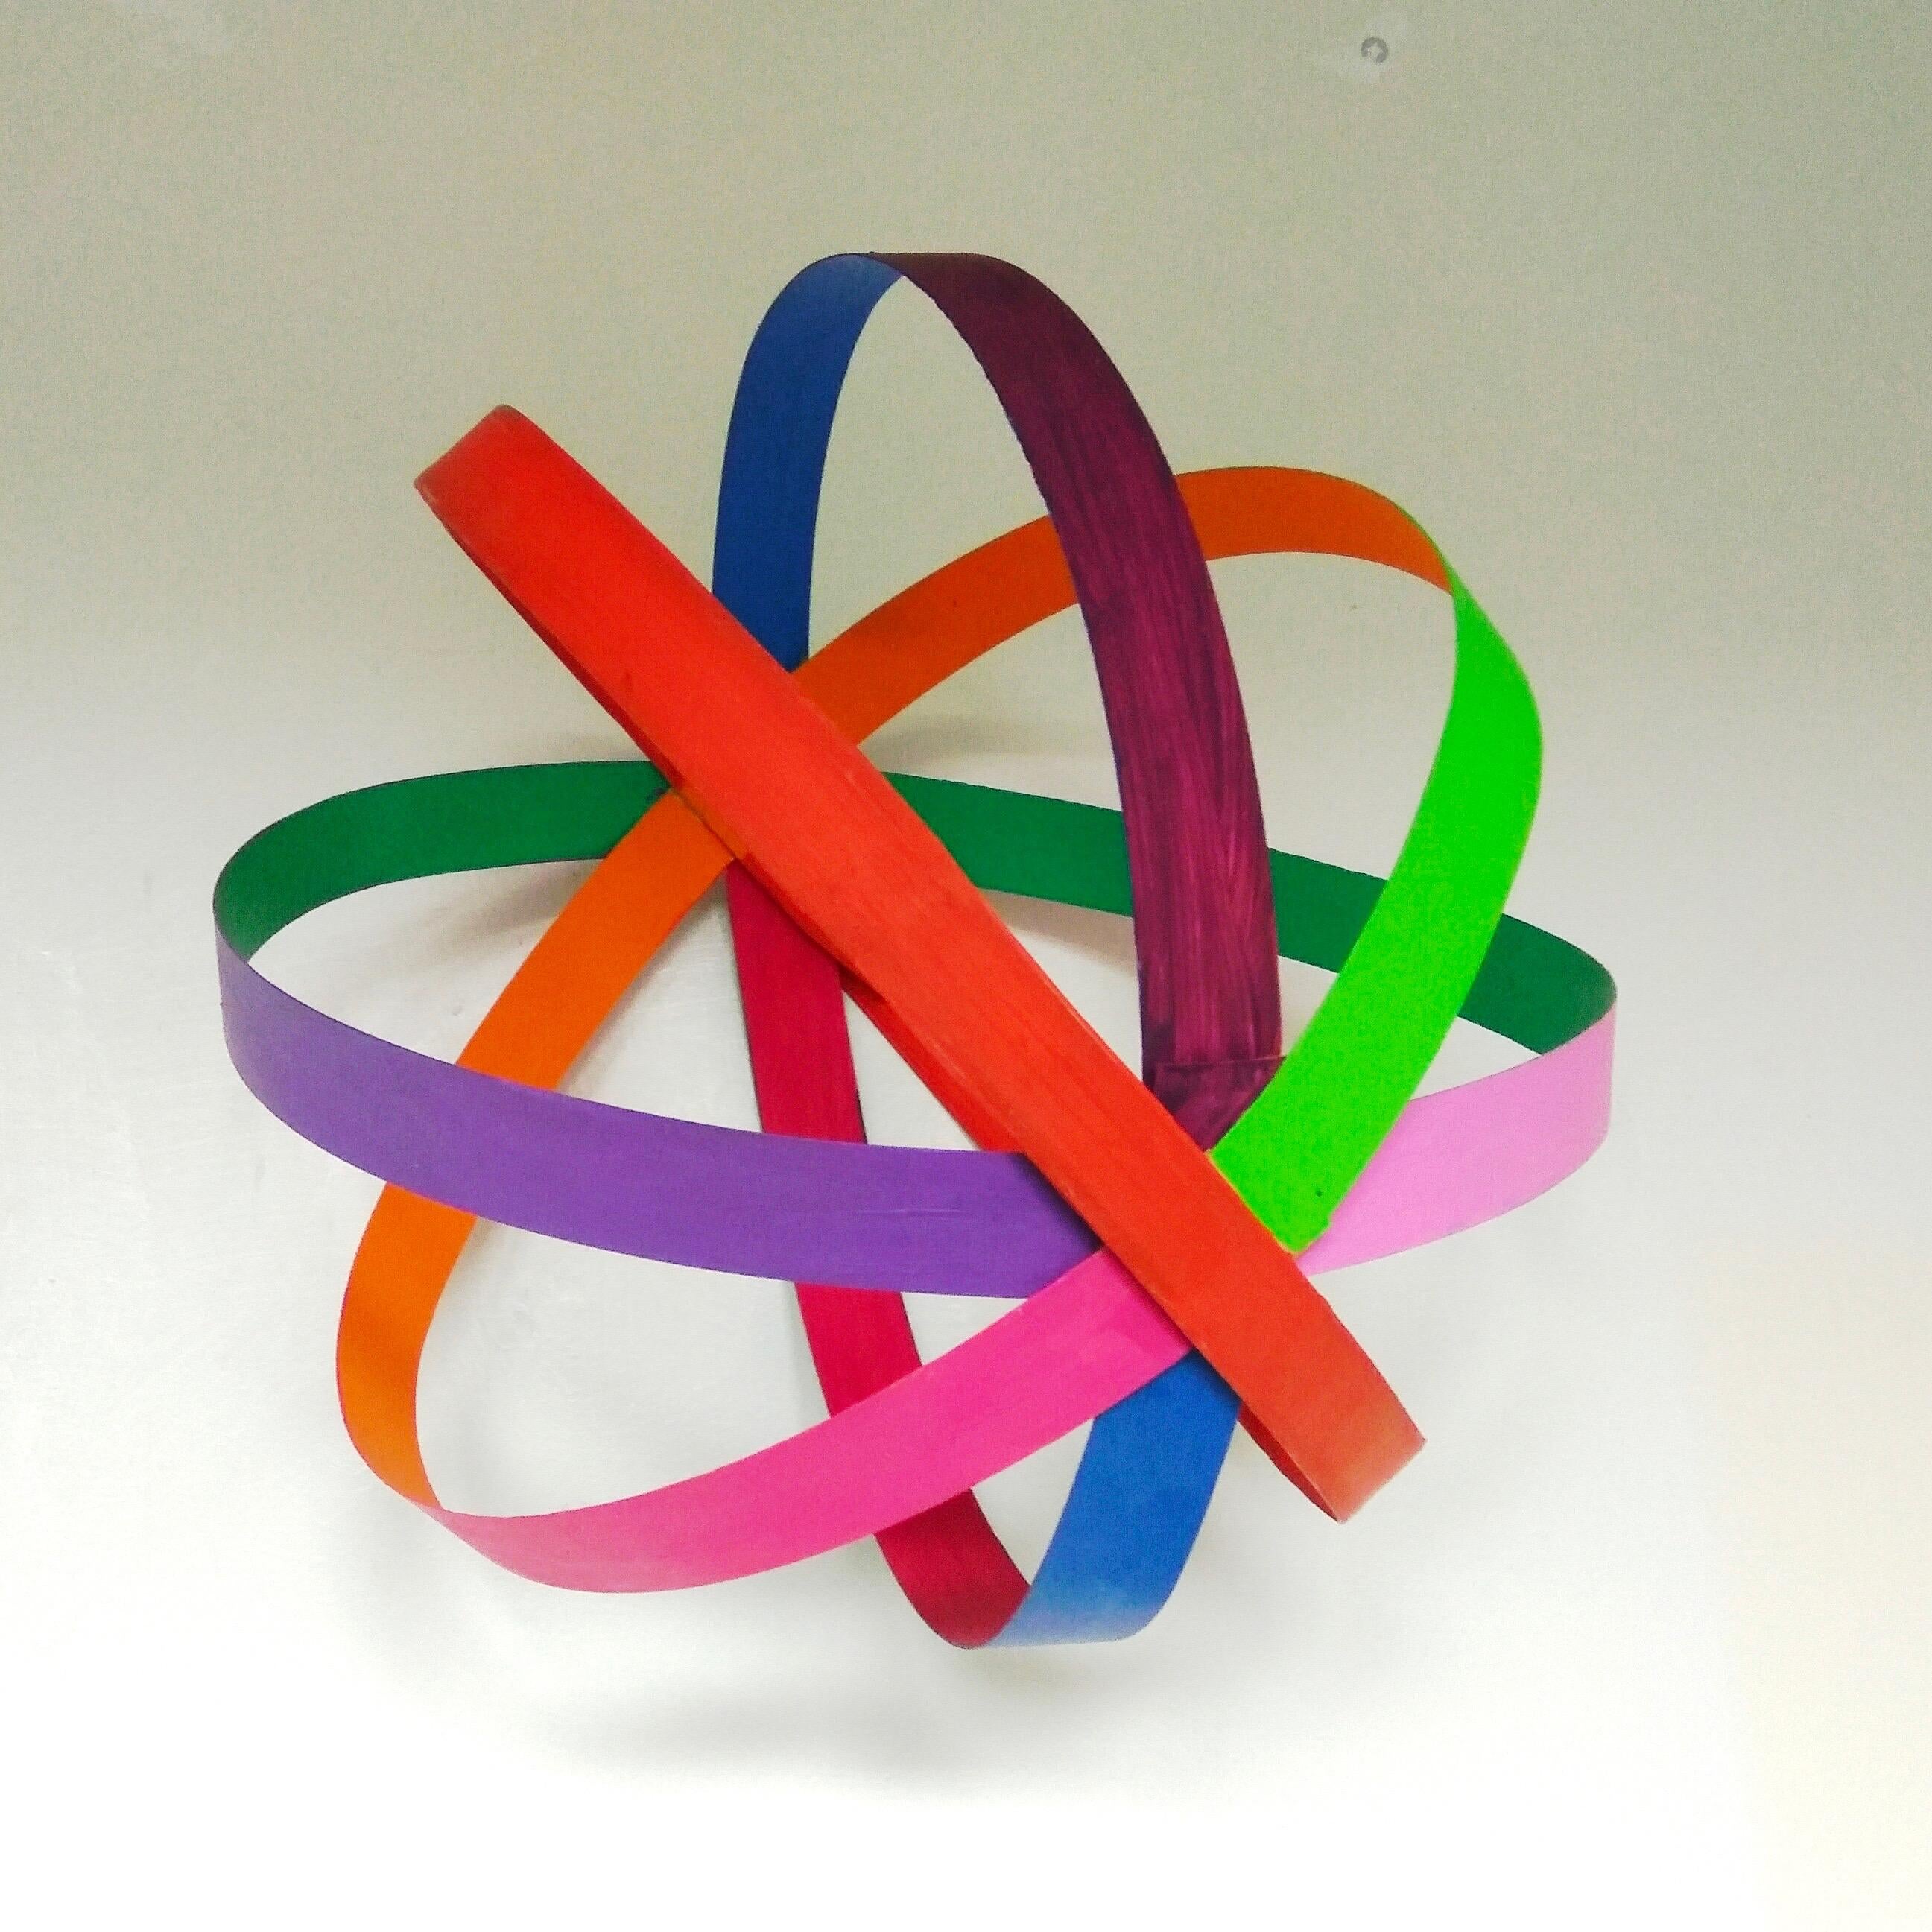 Sphère de couleurs faite à la main par Le Meduse
Pièce unique
Dimensions : L 30, P 30, H 30 cm : L 30, P 30, H 30 cm
MATERIAL : Bois peint.

Chaque modèle est unique car il est fabriqué à la main, il peut être reproduit de manière similaire mais pas